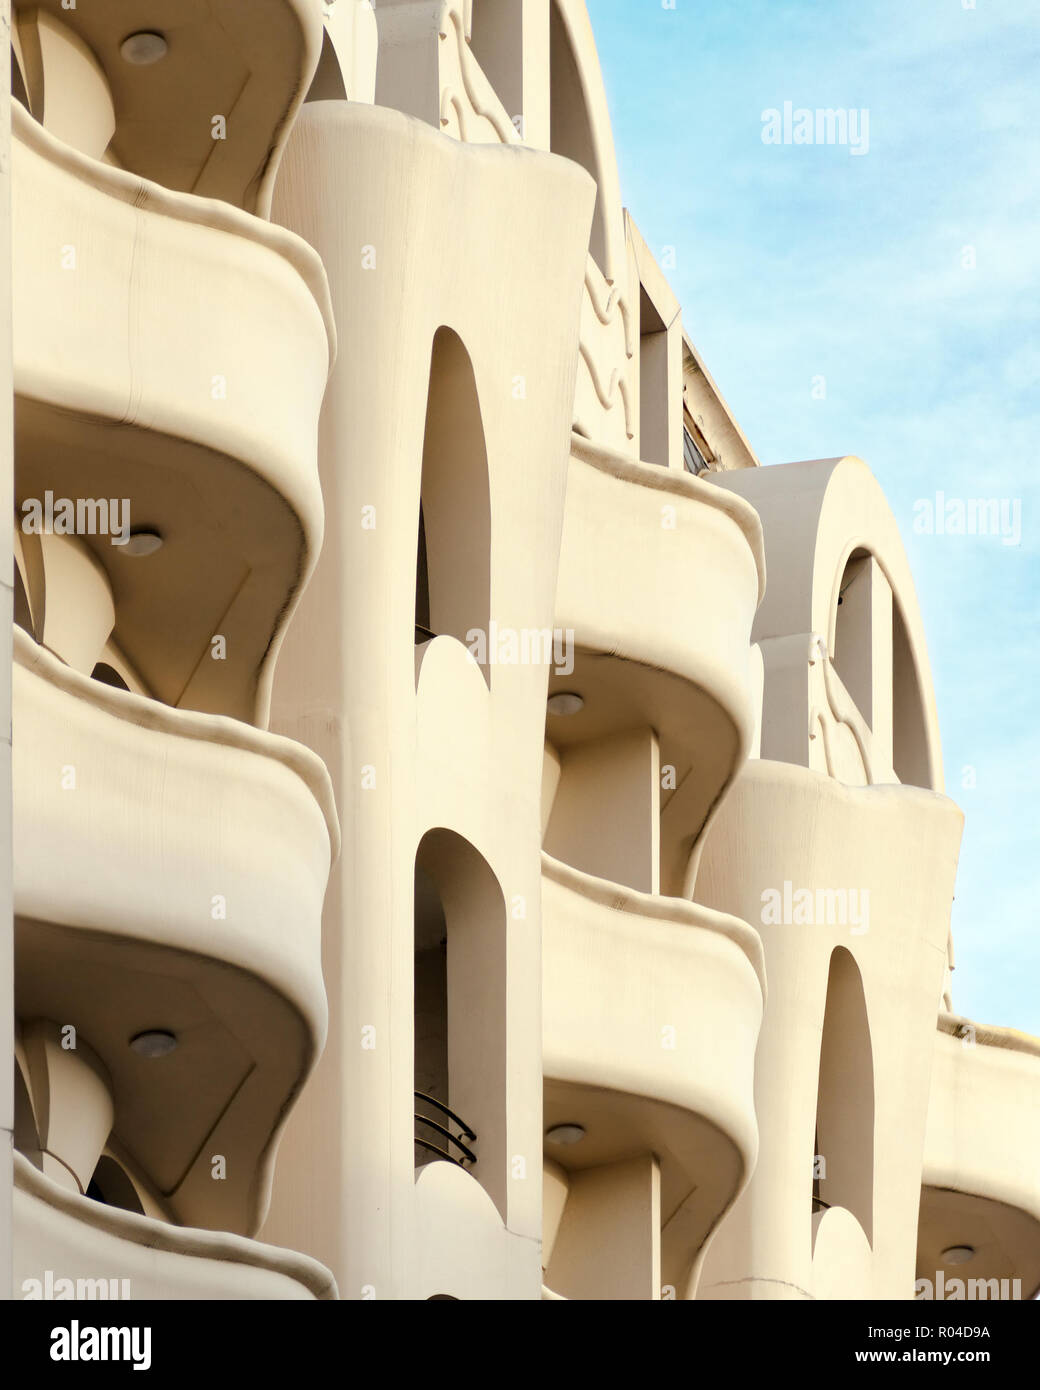 Detail der Fassade eines modernen Gebäudes - wellenförmigen Balkone, glatte Formen. Batumi, Georgia. Stockfoto